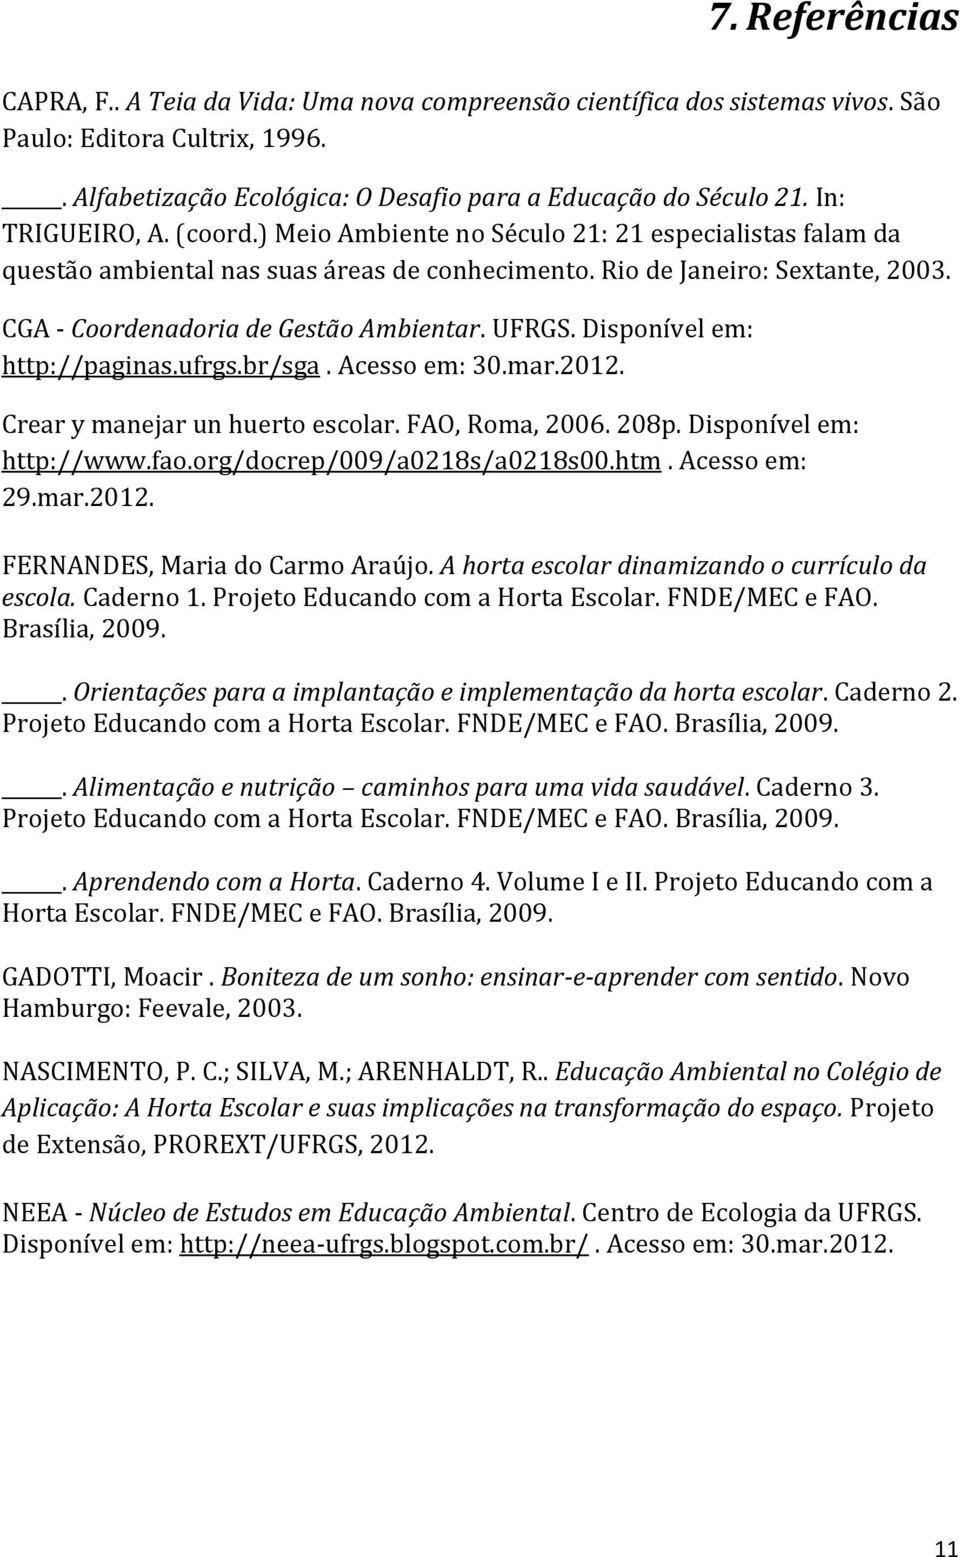 CGA - Coordenadoria de Gestão Ambientar. UFRGS. Disponível em: http://paginas.ufrgs.br/sga. Acesso em: 30.mar.2012. Crear y manejar un huerto escolar. FAO, Roma, 2006. 208p. Disponível em: http://www.